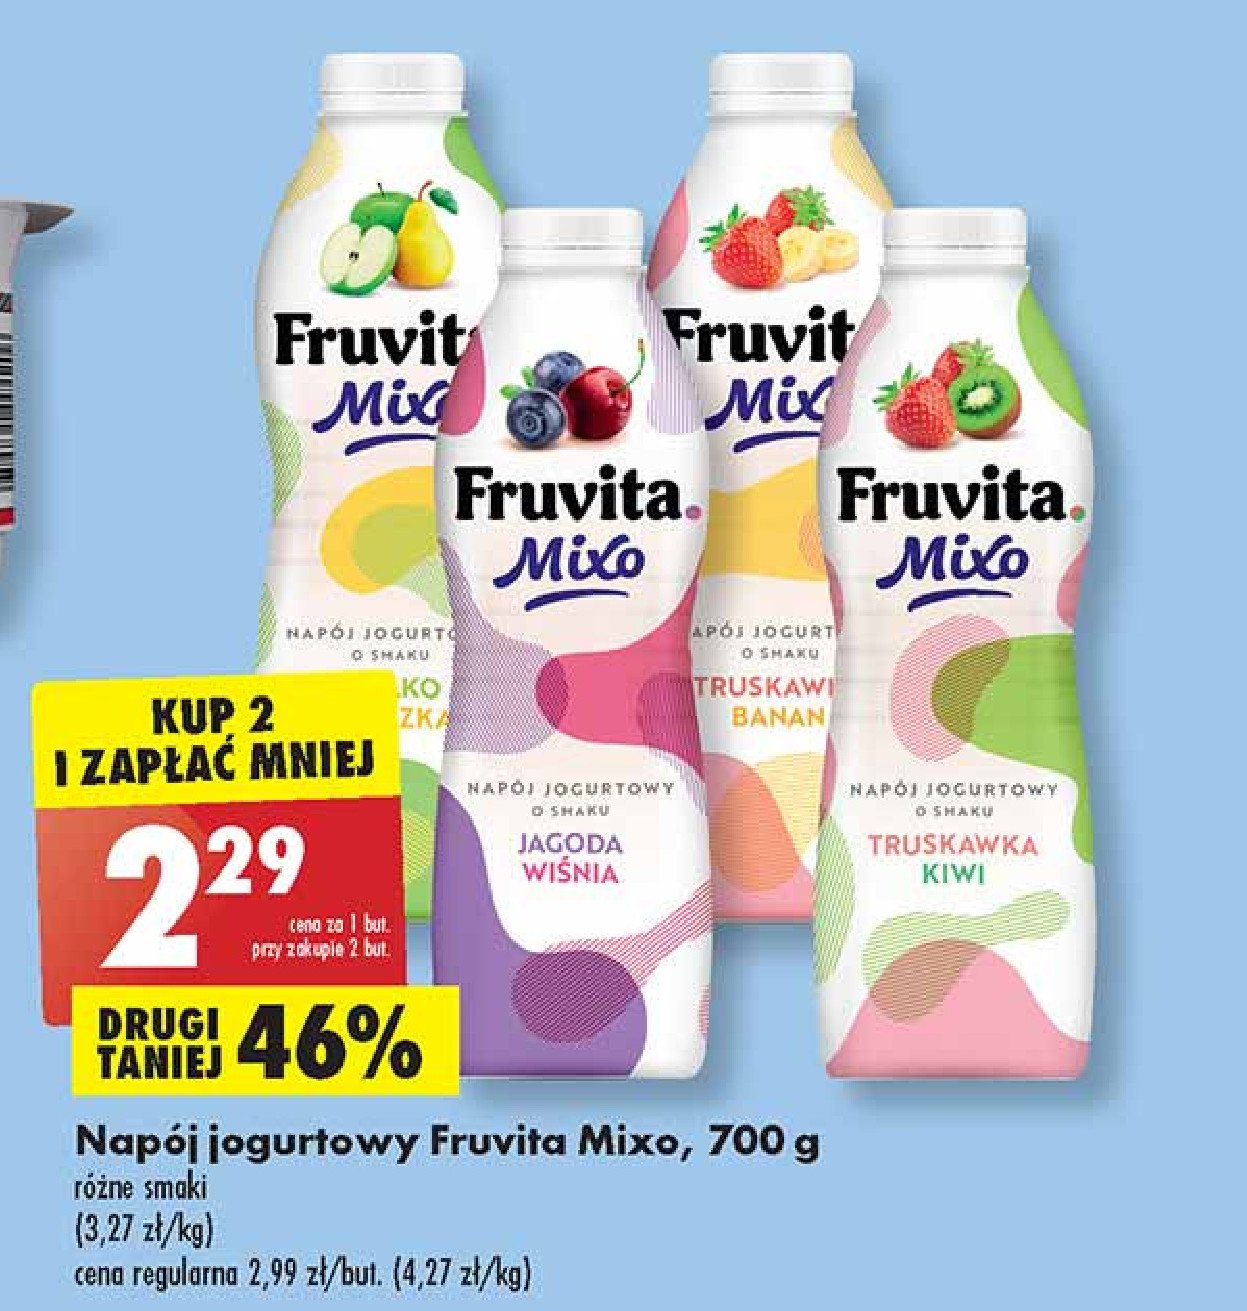 Napój jogurtowy truskawka kiwi Fruvita mixo promocja